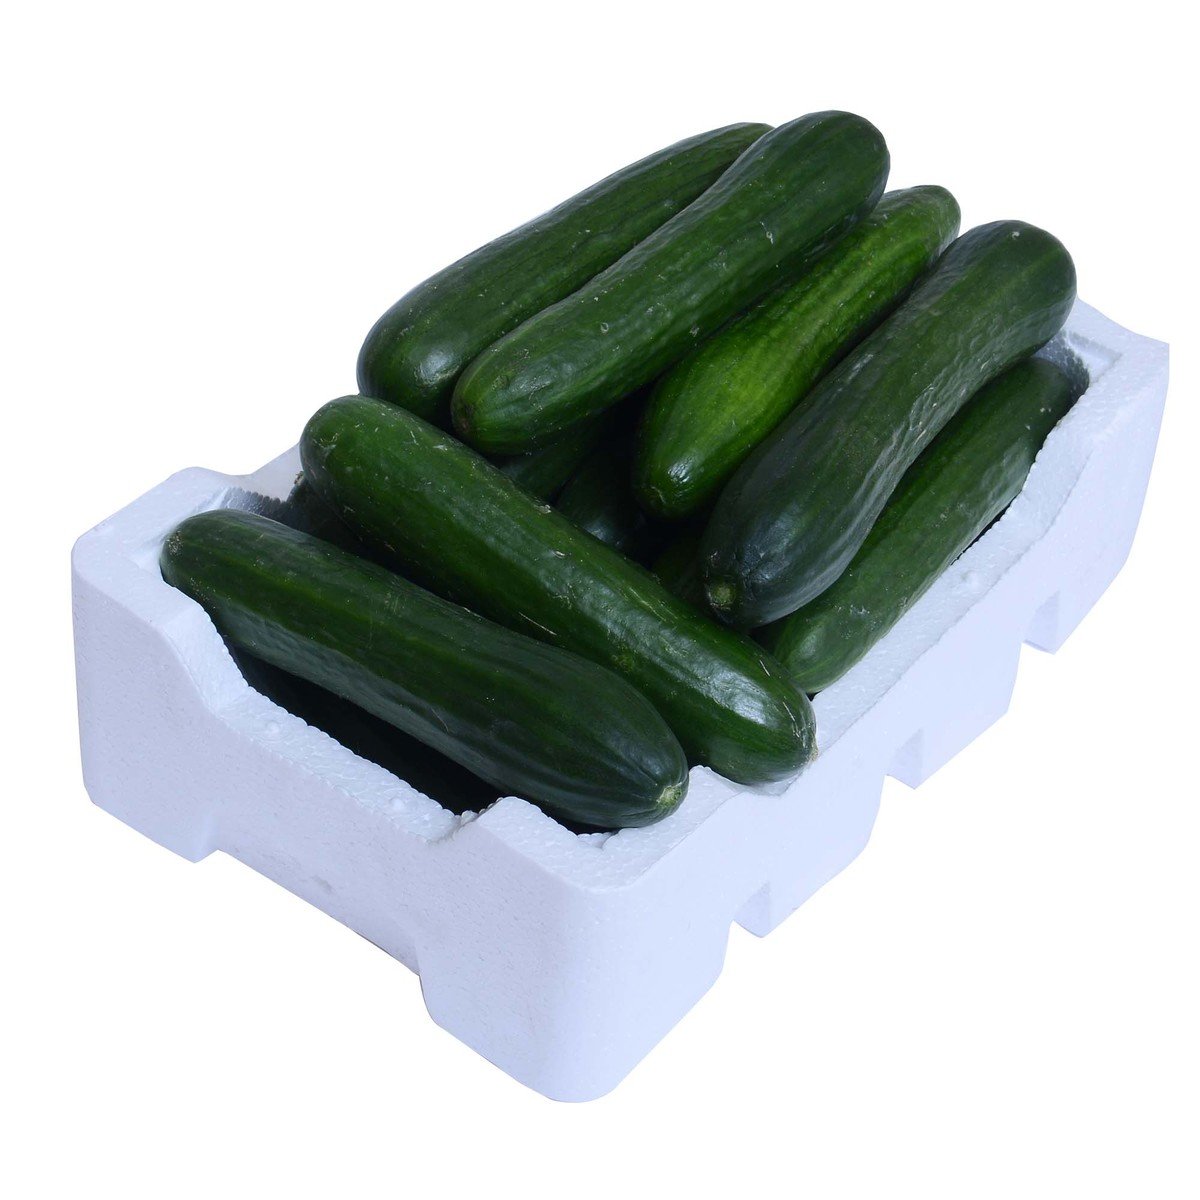 اشتري قم بشراء خيار ٢ جم تقريبا Online at Best Price من الموقع - من لولو هايبر ماركت Cucumber في السعودية